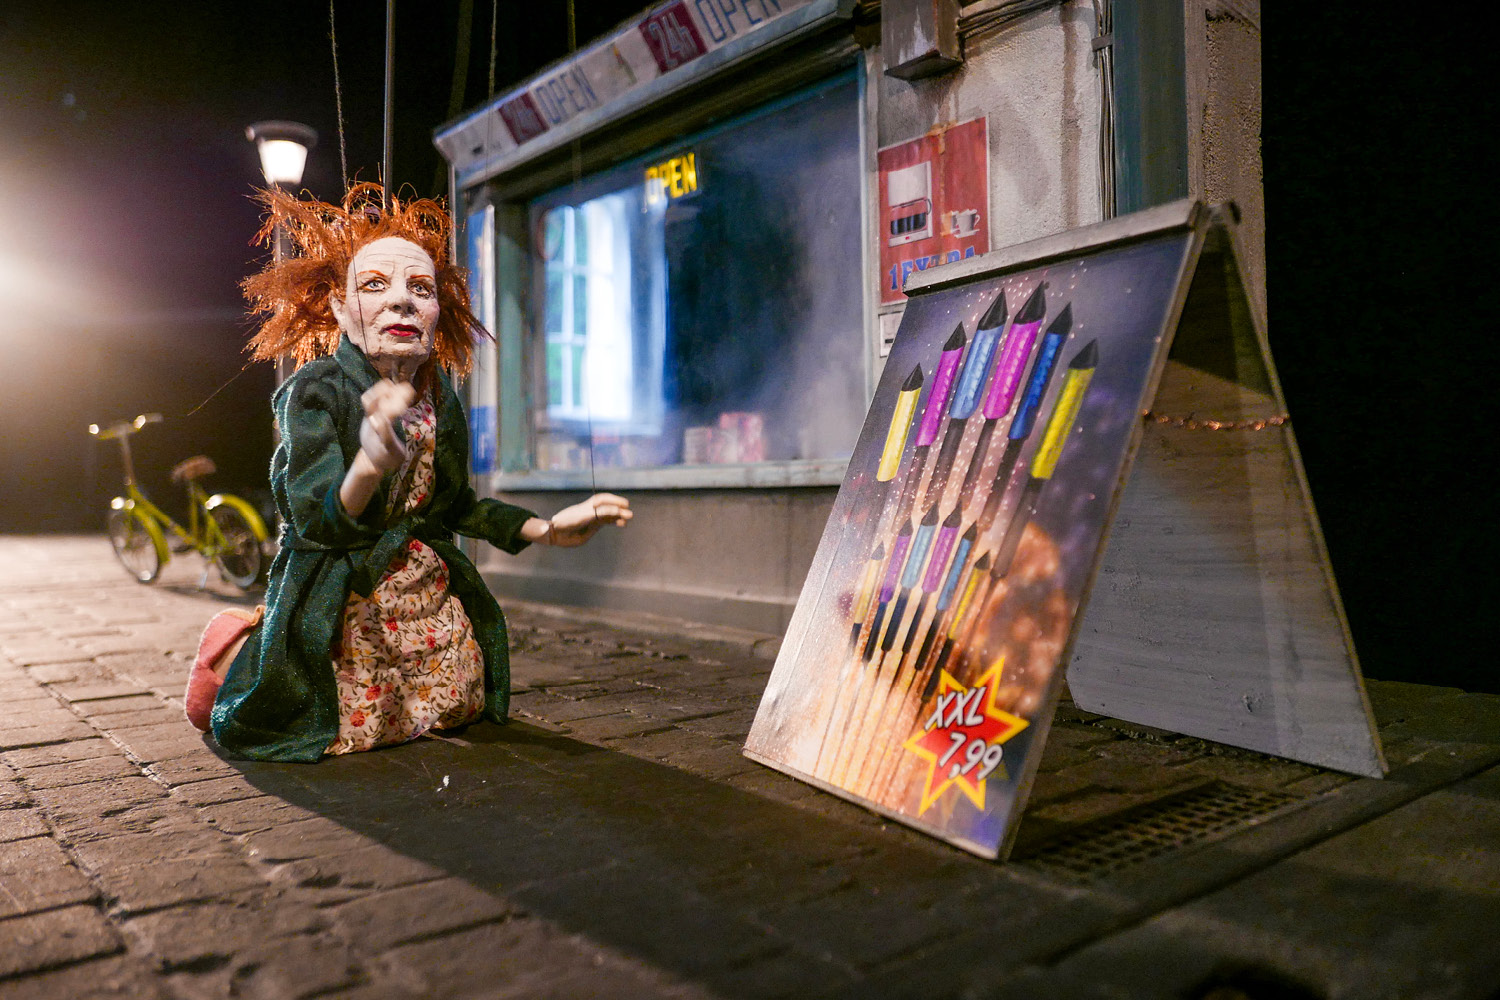 Eine rothaarige Marionettenfrau in Morgenmantel kniet neben einem Werbeschild mit Feuerwerksraketen. Im Hintergrund ist ein Fahrrand und ein Geschäft mit großem Schaufenster.